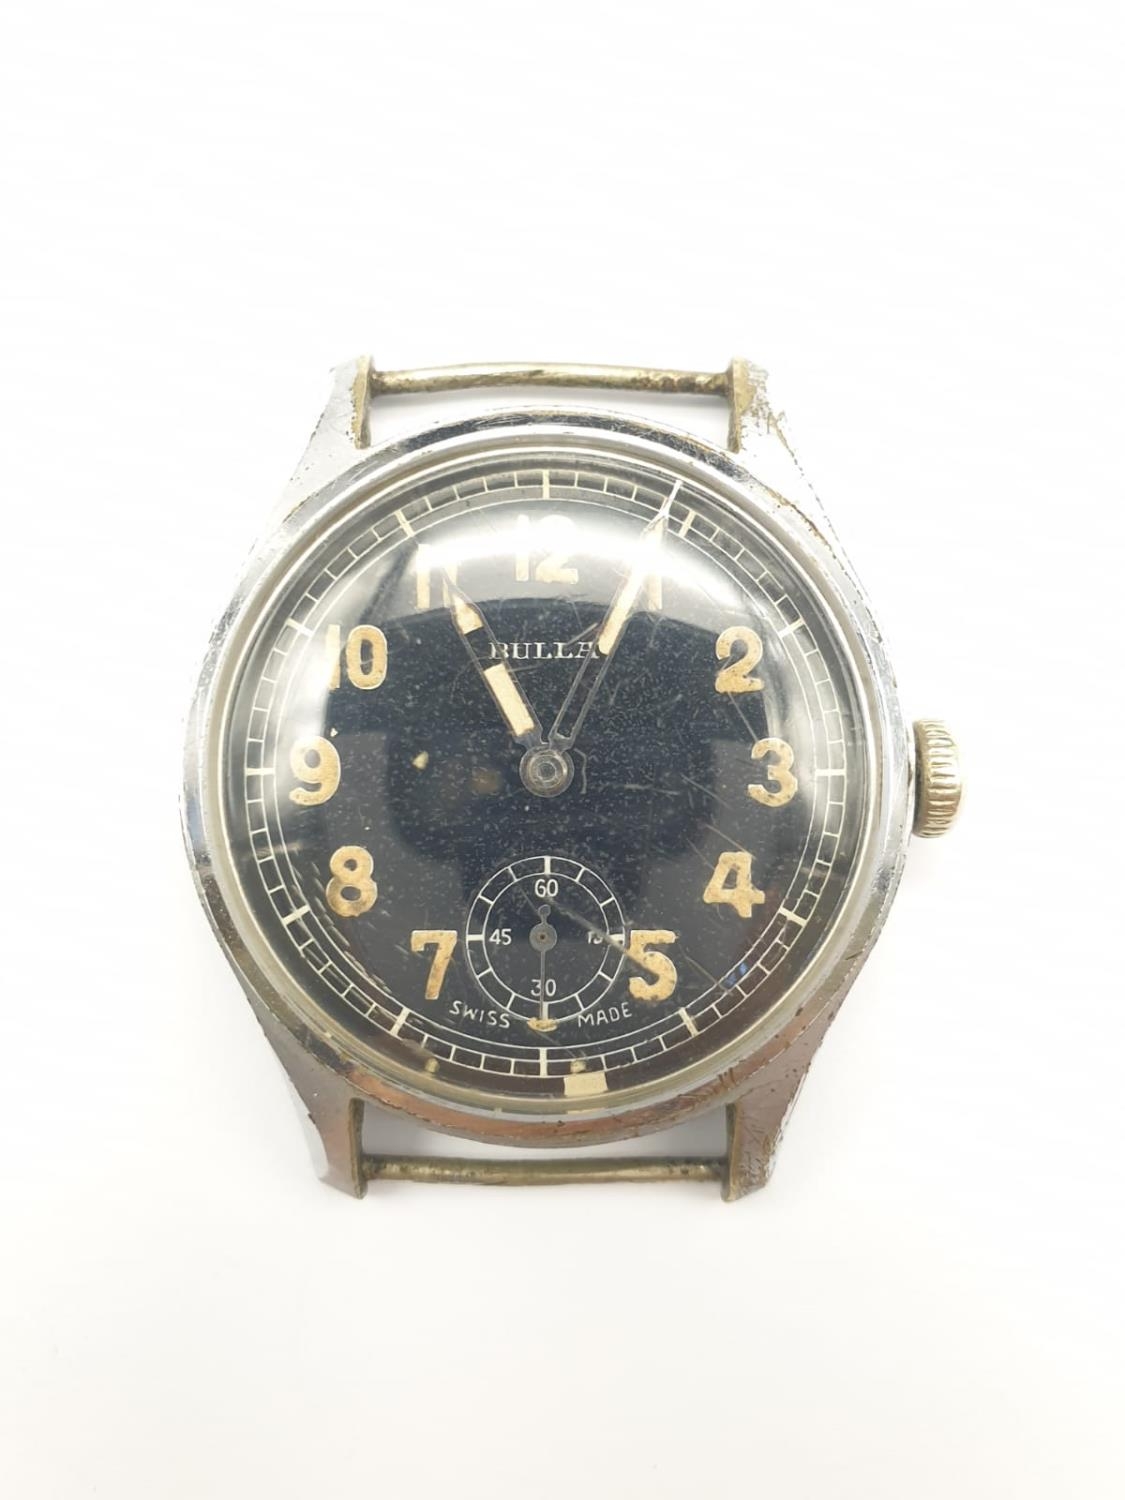 WW2 German Army Wrist Watch made by ?Bulla?. Marked ?DU? for Deutsch Heer. Working.